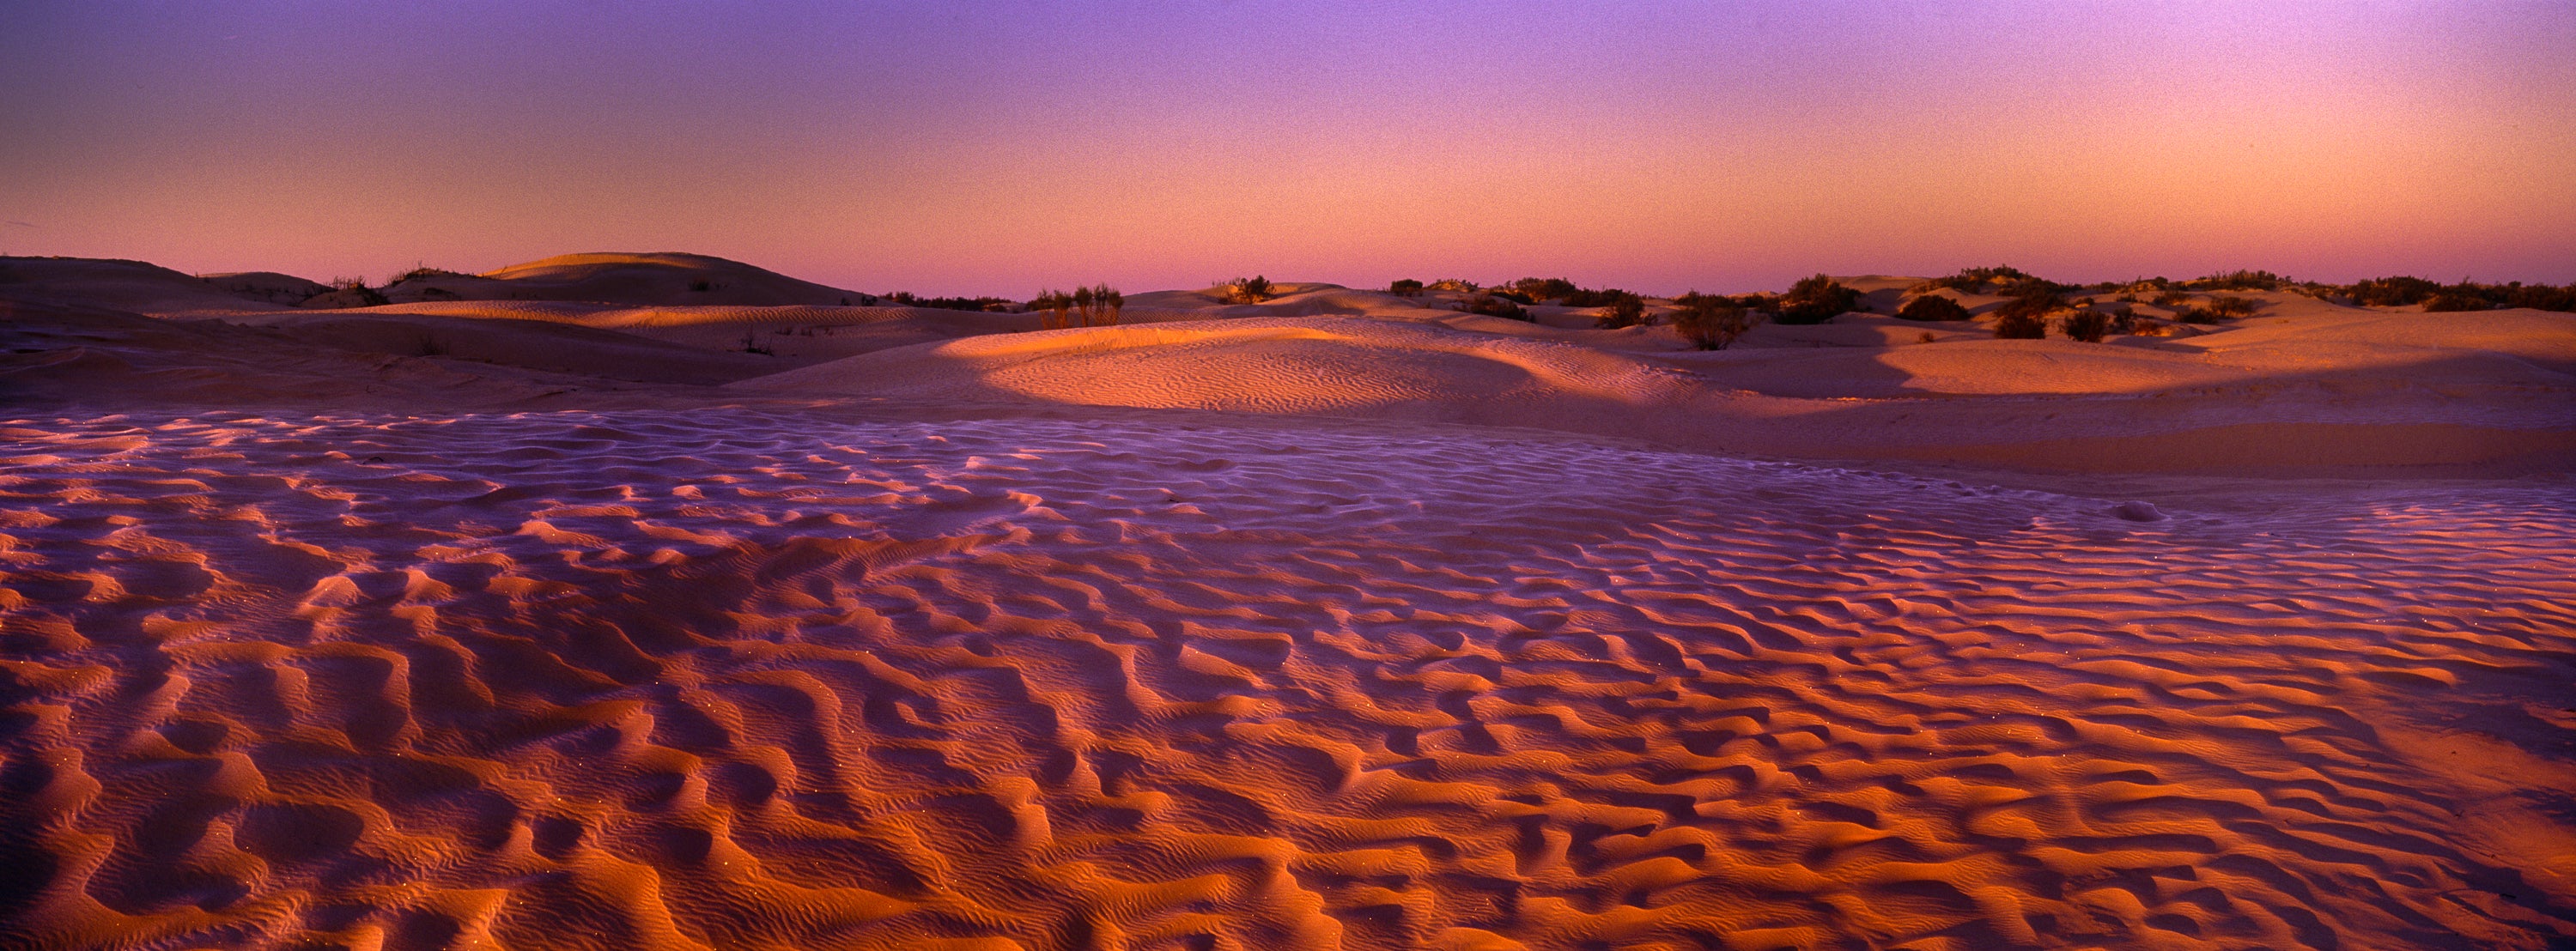 TUNISIA, Zaafrane, Sahara Desert.  Morning light illuminates the frost covered  patterns of the sand dunes of the great erg oriental